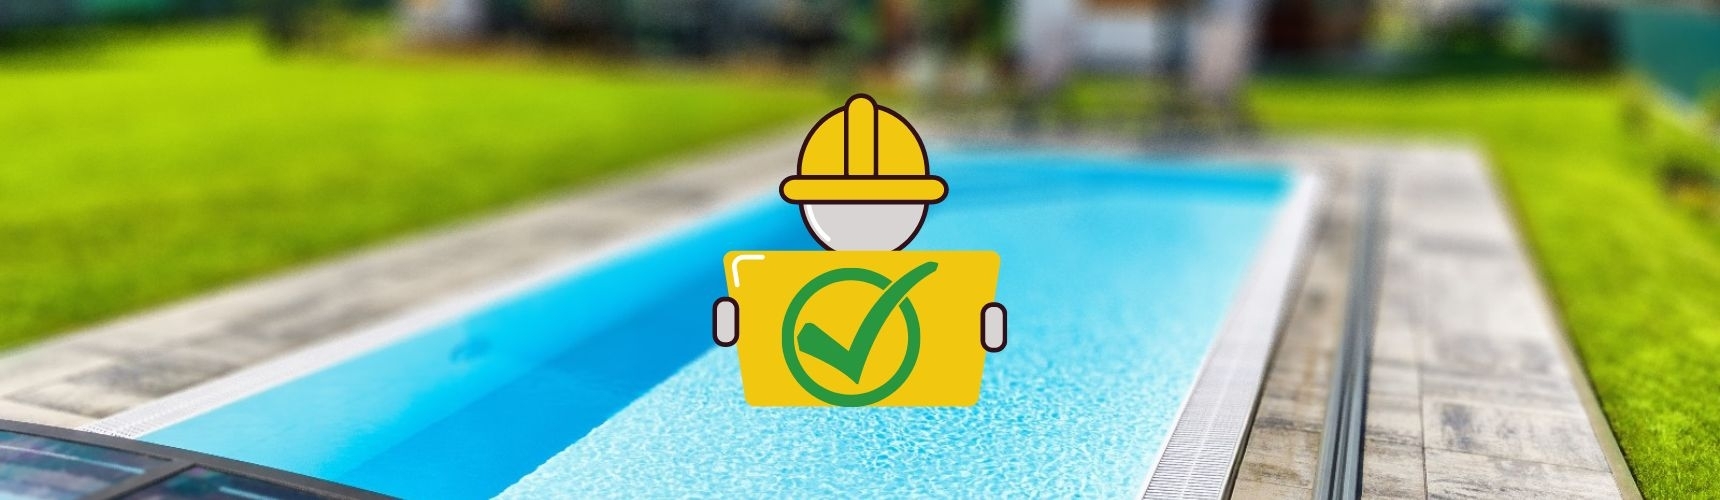 Je potřeba stavební povolení na výstavbu bazénu?